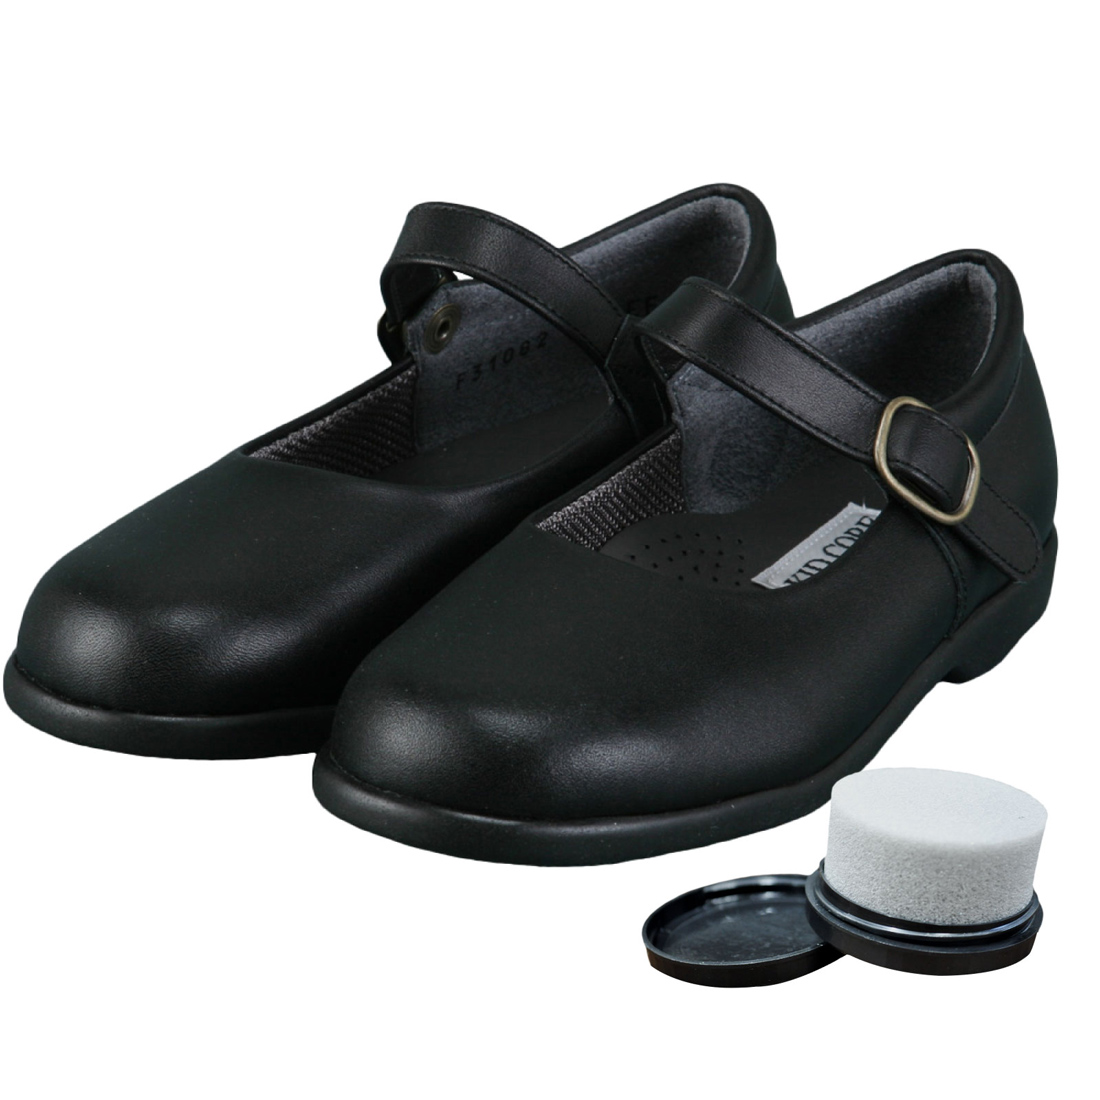 靴磨き付き KID CORE キッドコア 2E 日本製本革 ソフトタイプ ワンストラップフォーマルシューズ 2E ブラック 靴ズレしにくい靴  17.0cm～21.0cm 1～3営業日以内に発送となります。※20cm以下のサイズはお取り寄せ品となります。ご了承ください。  kc1082｜お受験用品のお店 ...